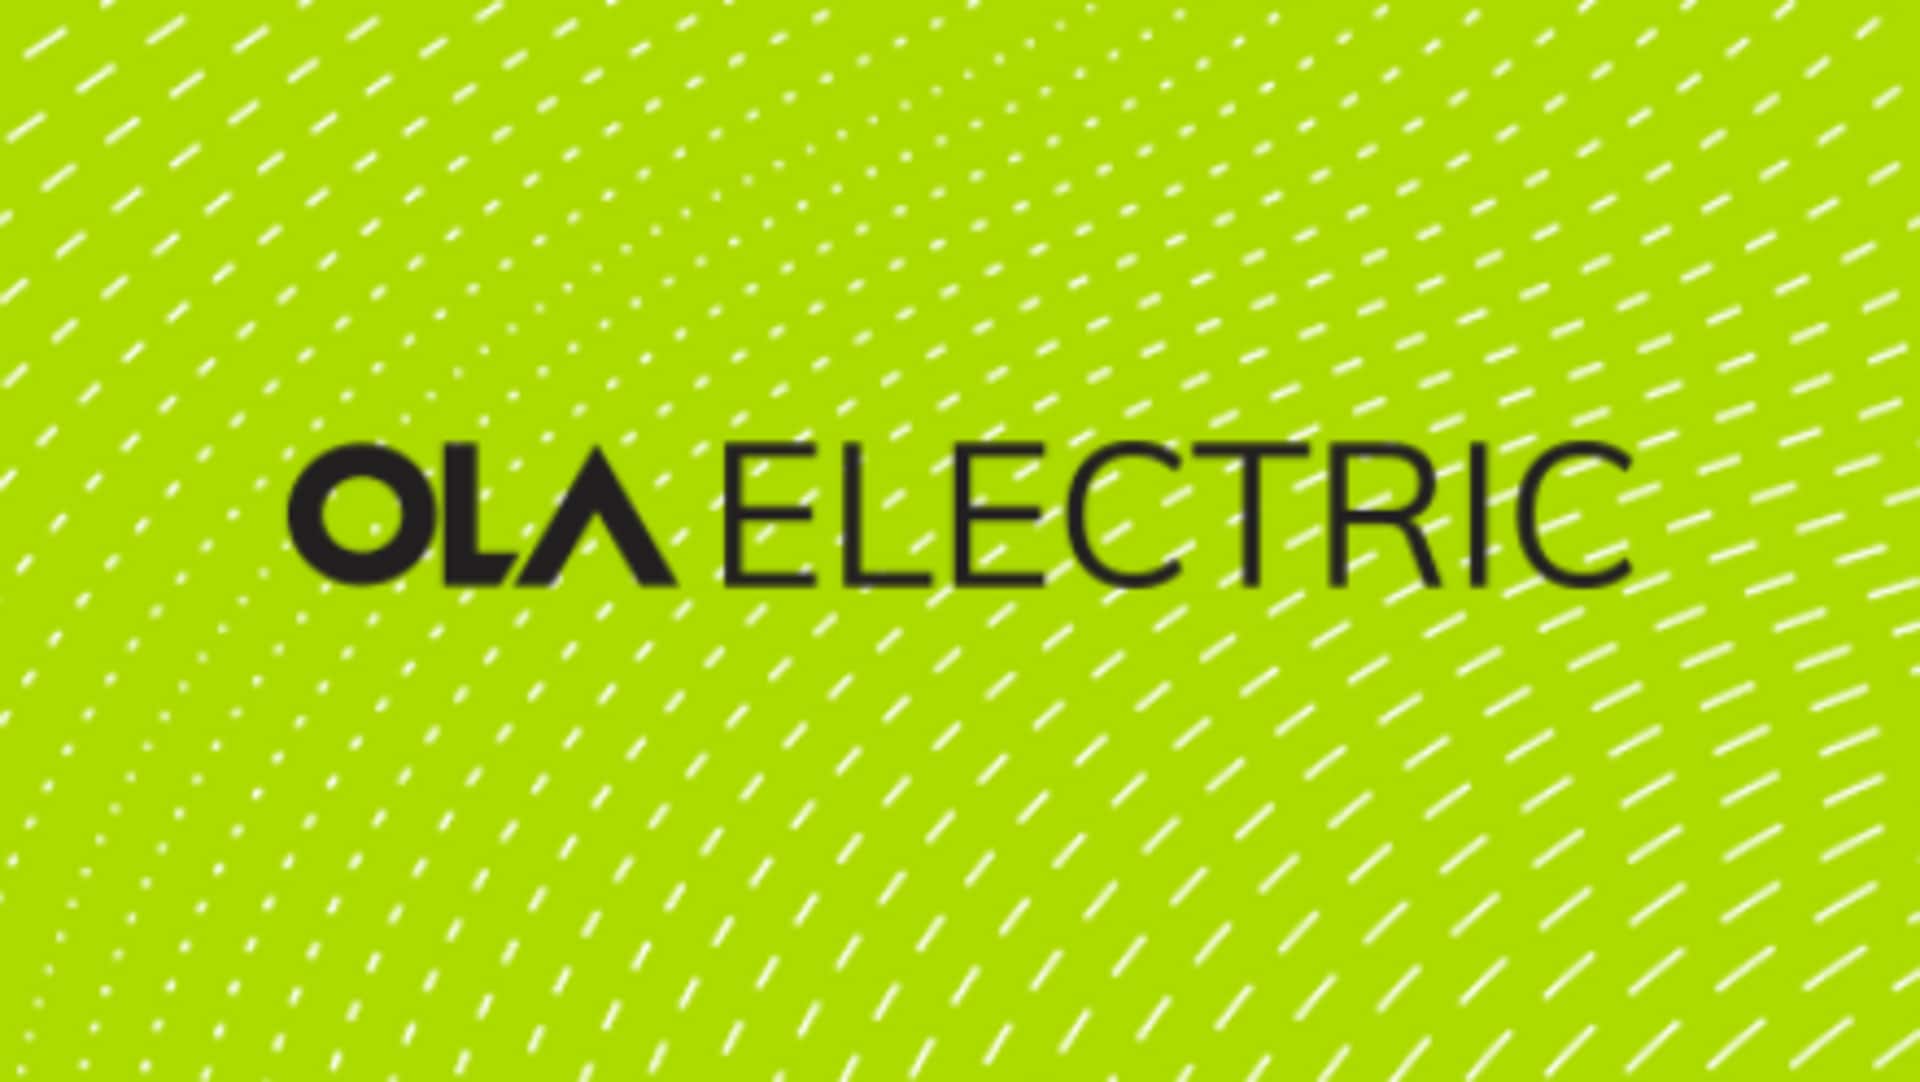 Ola Electric : భారీగా నిధులు సేకరించిన ఓలా..రూ.3,000కోట్లు సమీకరించిన ఈవీ సంస్థ